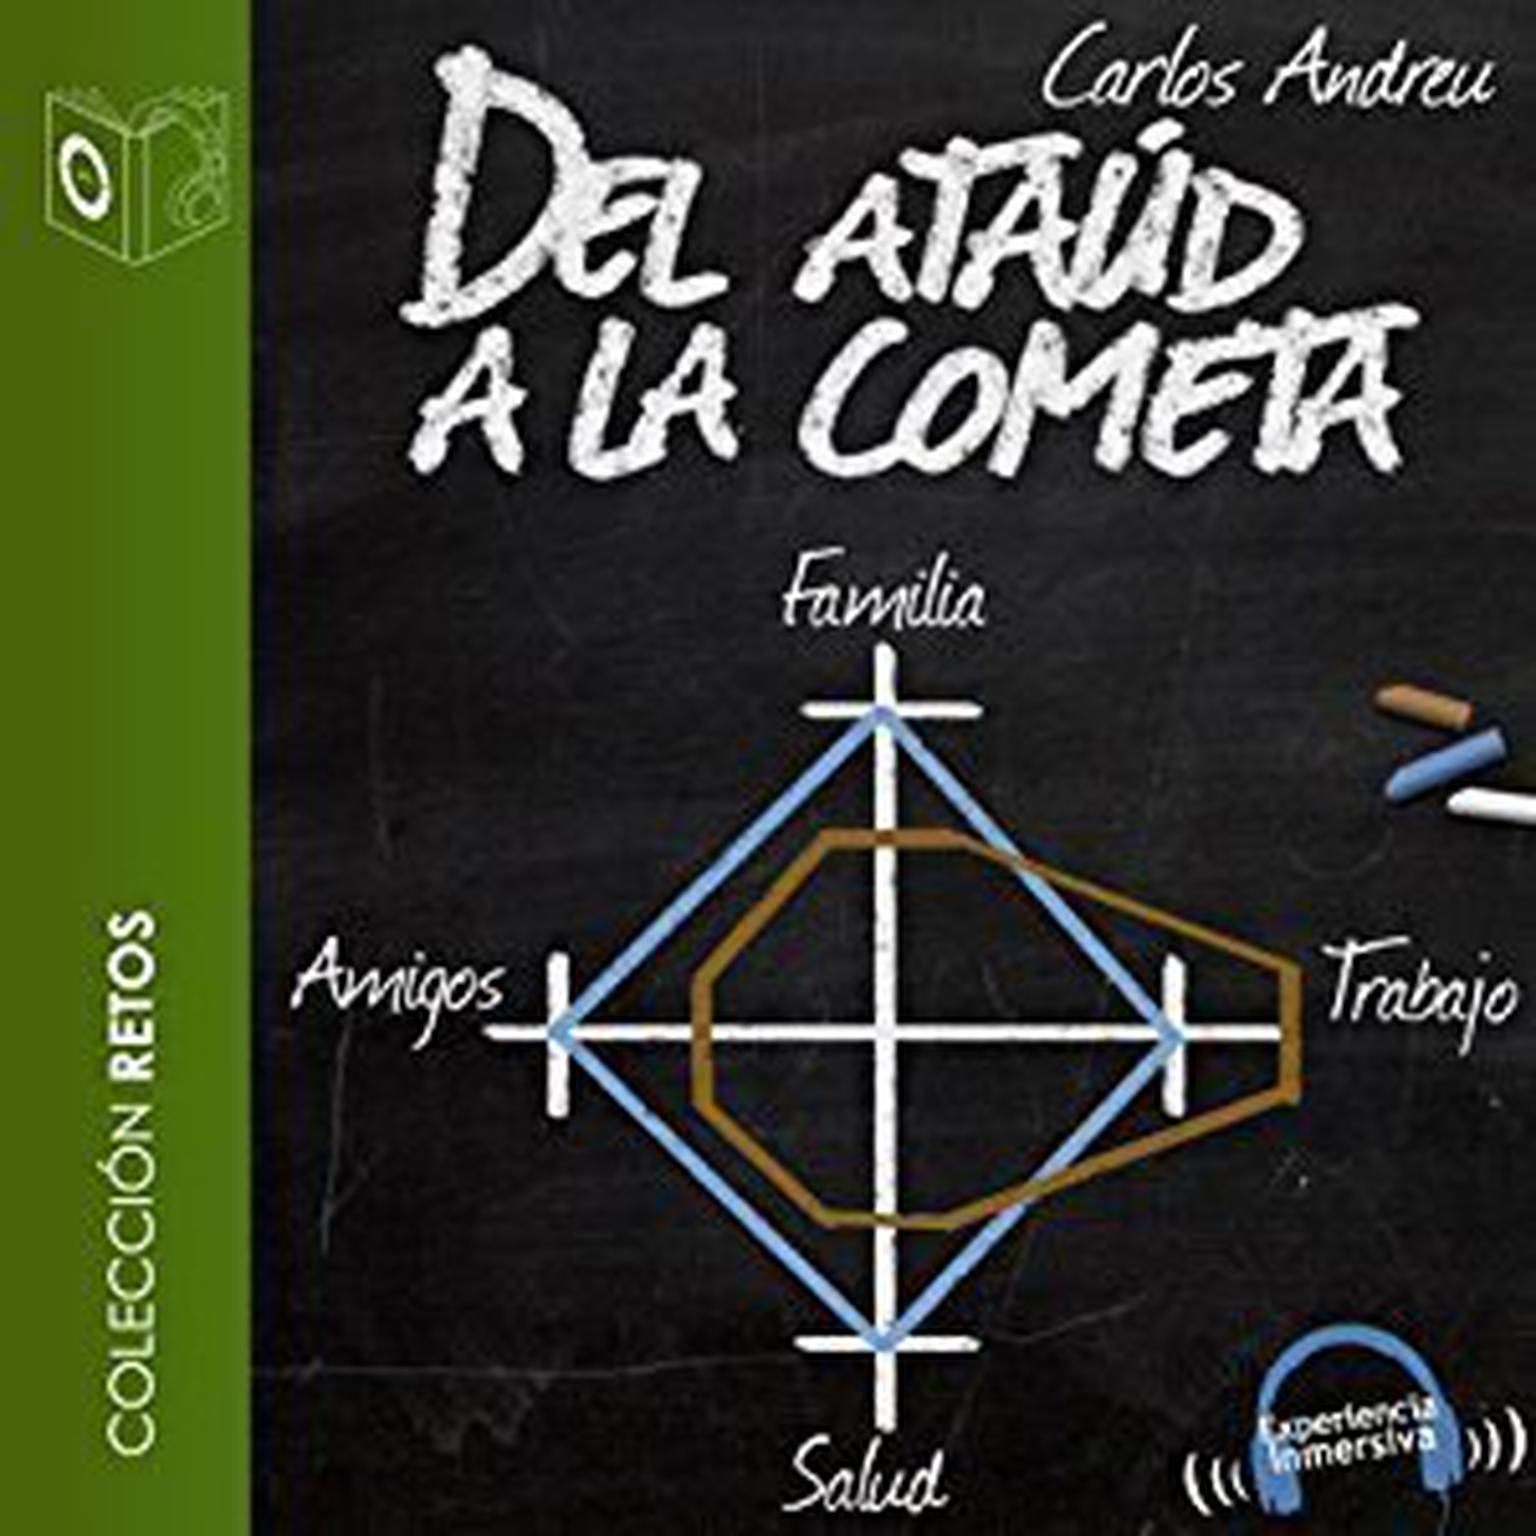 Del ataúd a la cometa Audiobook, by Carlos Andreu